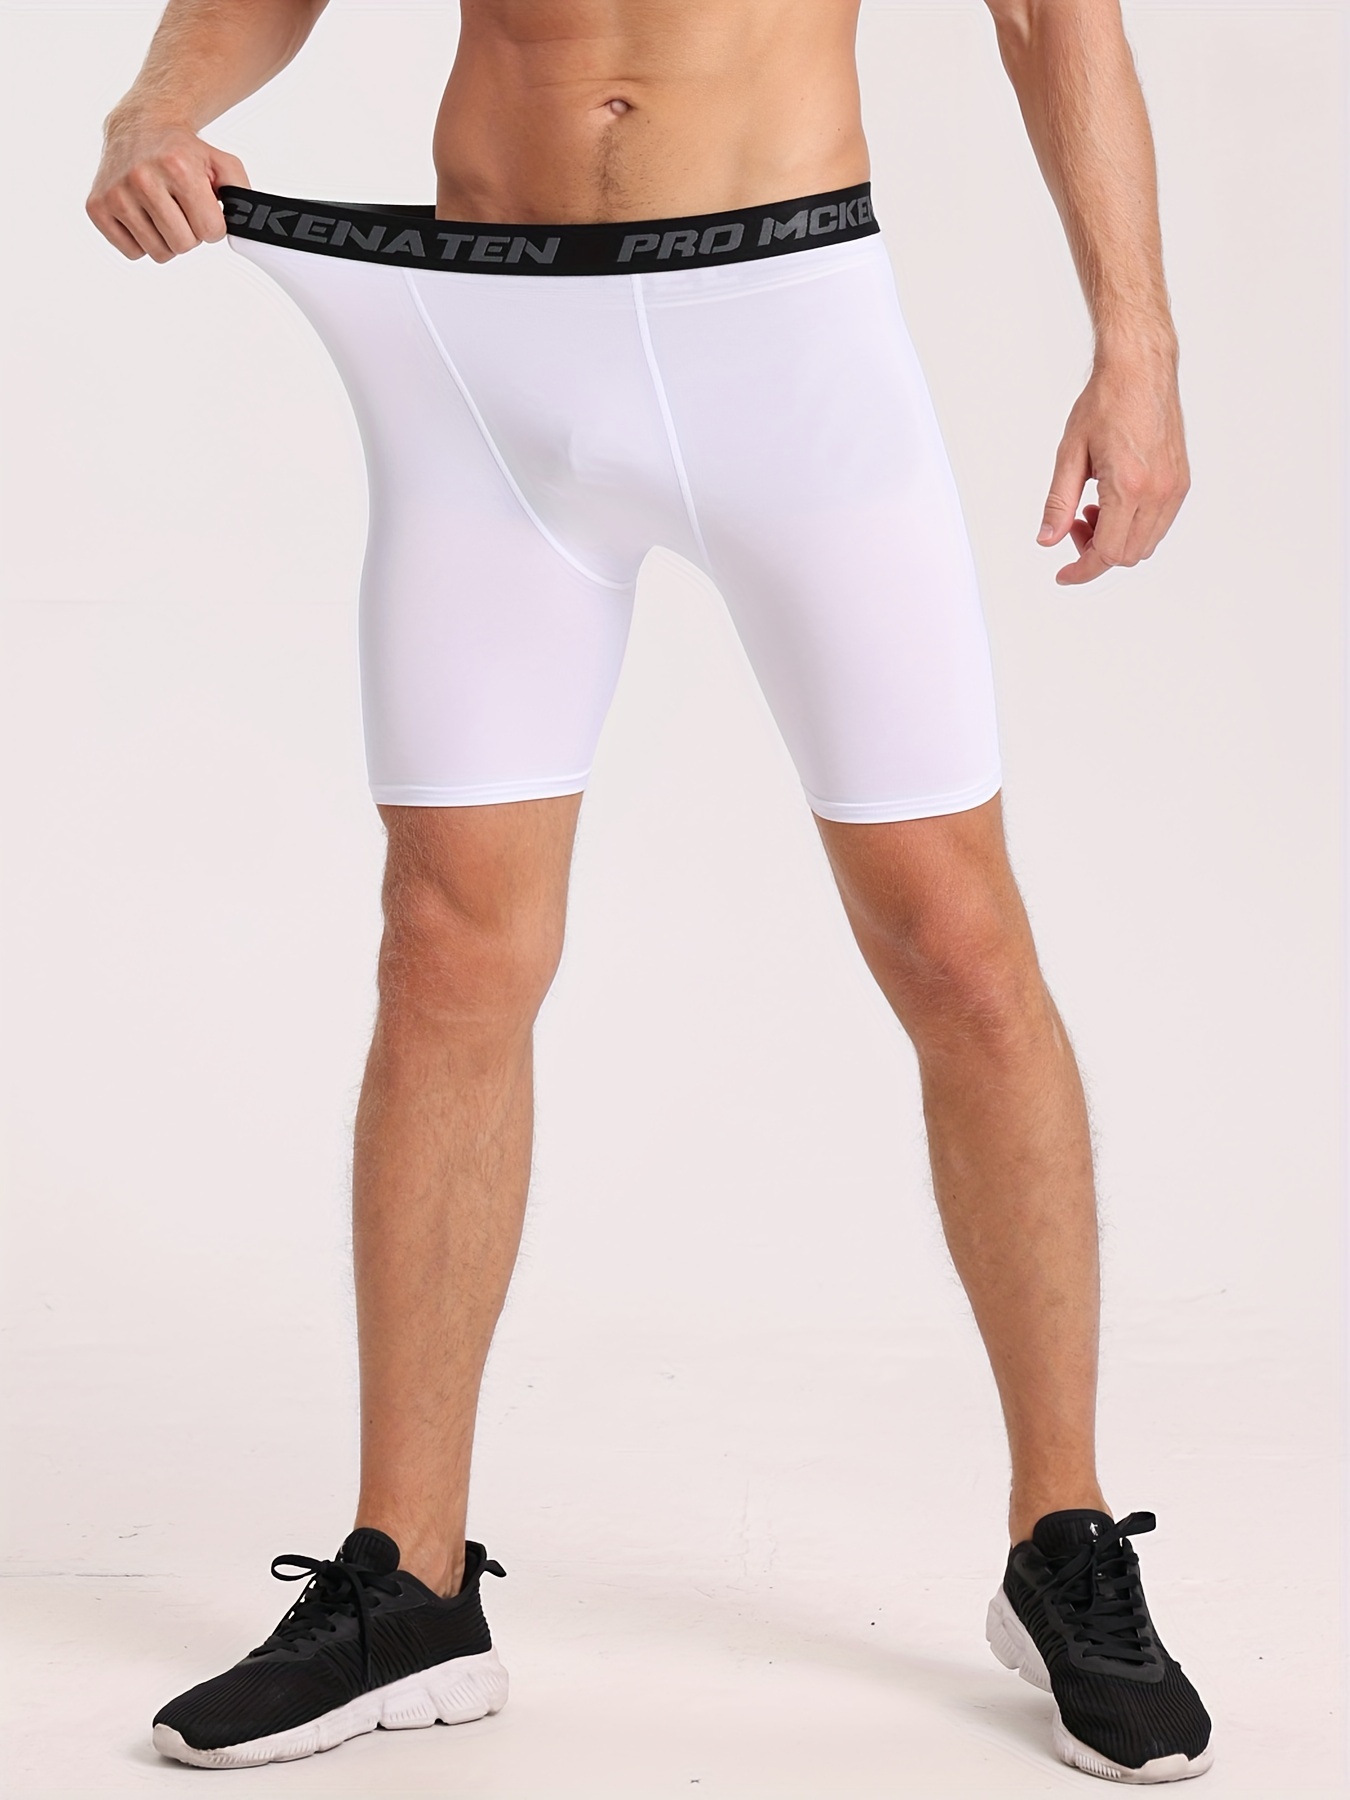  Men's Compression Running Shorts Elastic Pants Quick